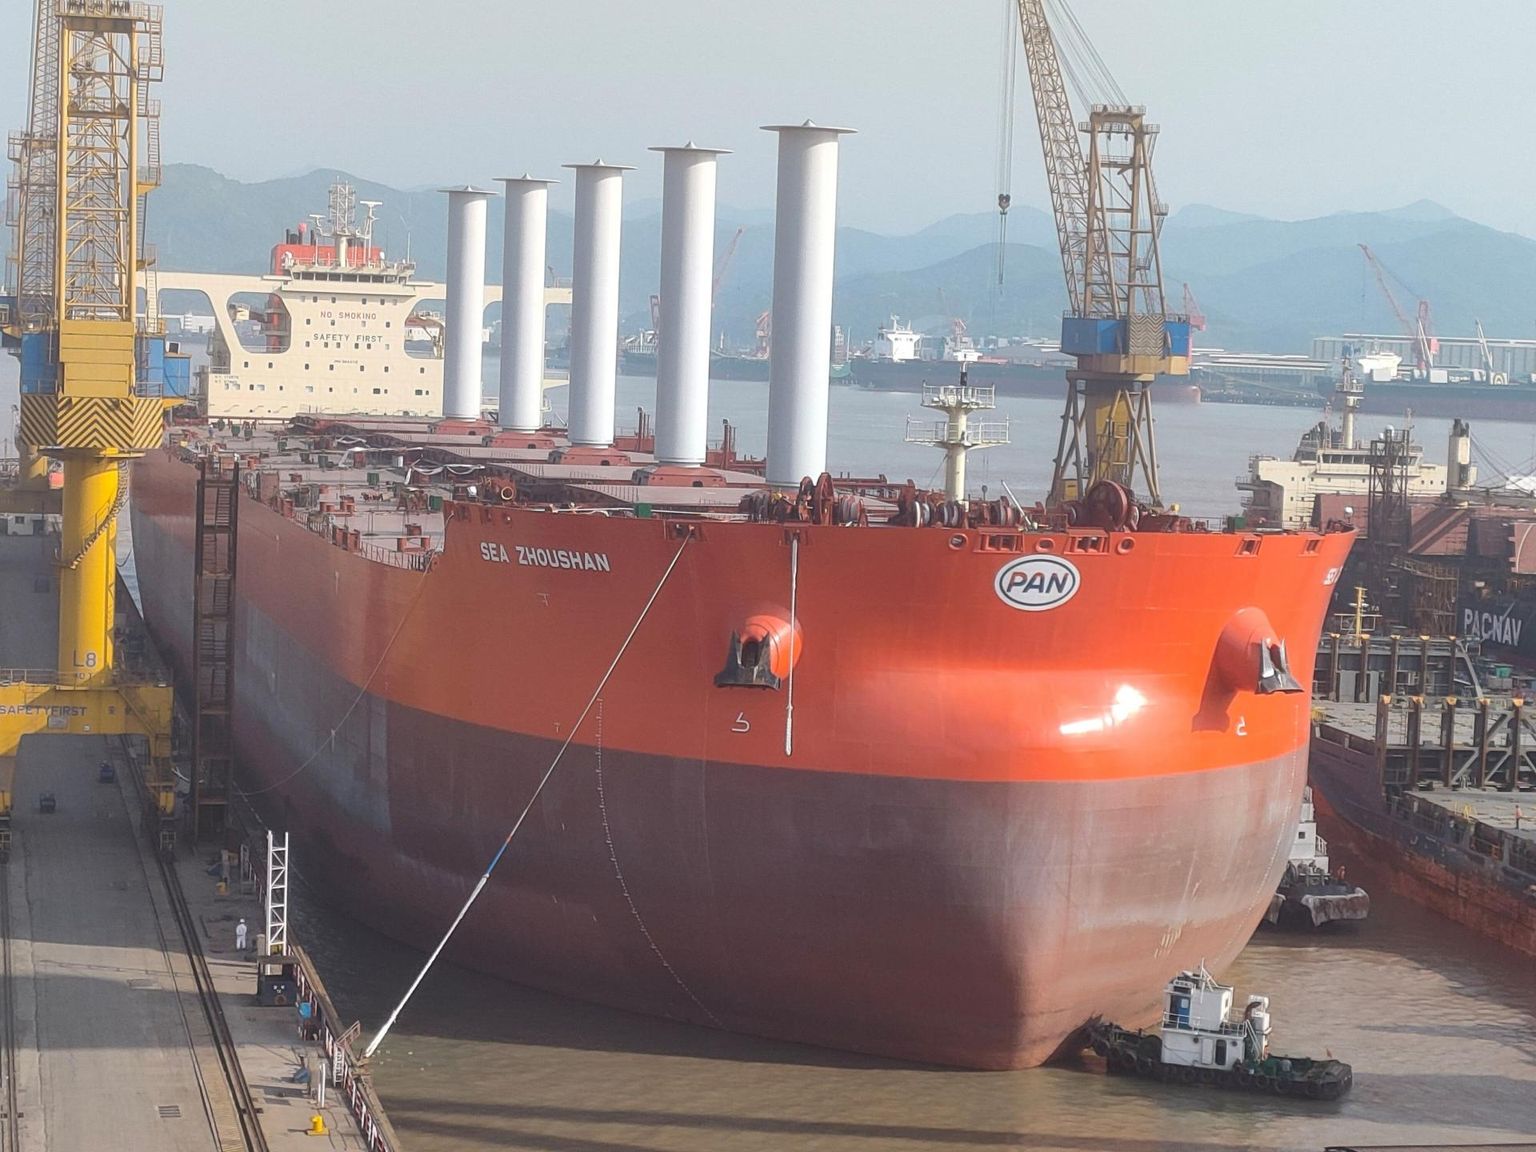 Brasiilia kaevandusettevõttele Vale kuuluvale laevale Sea Zhoushan on Hiinas paigaldatud viis rootorpurje. On hinnatud, et sellise tehnika abil võib tuult kasutades kokku hoida kuni 1/5 kütusest. Laev tänavu 29. aprillil Zhoushani laevatehases Hiinas.